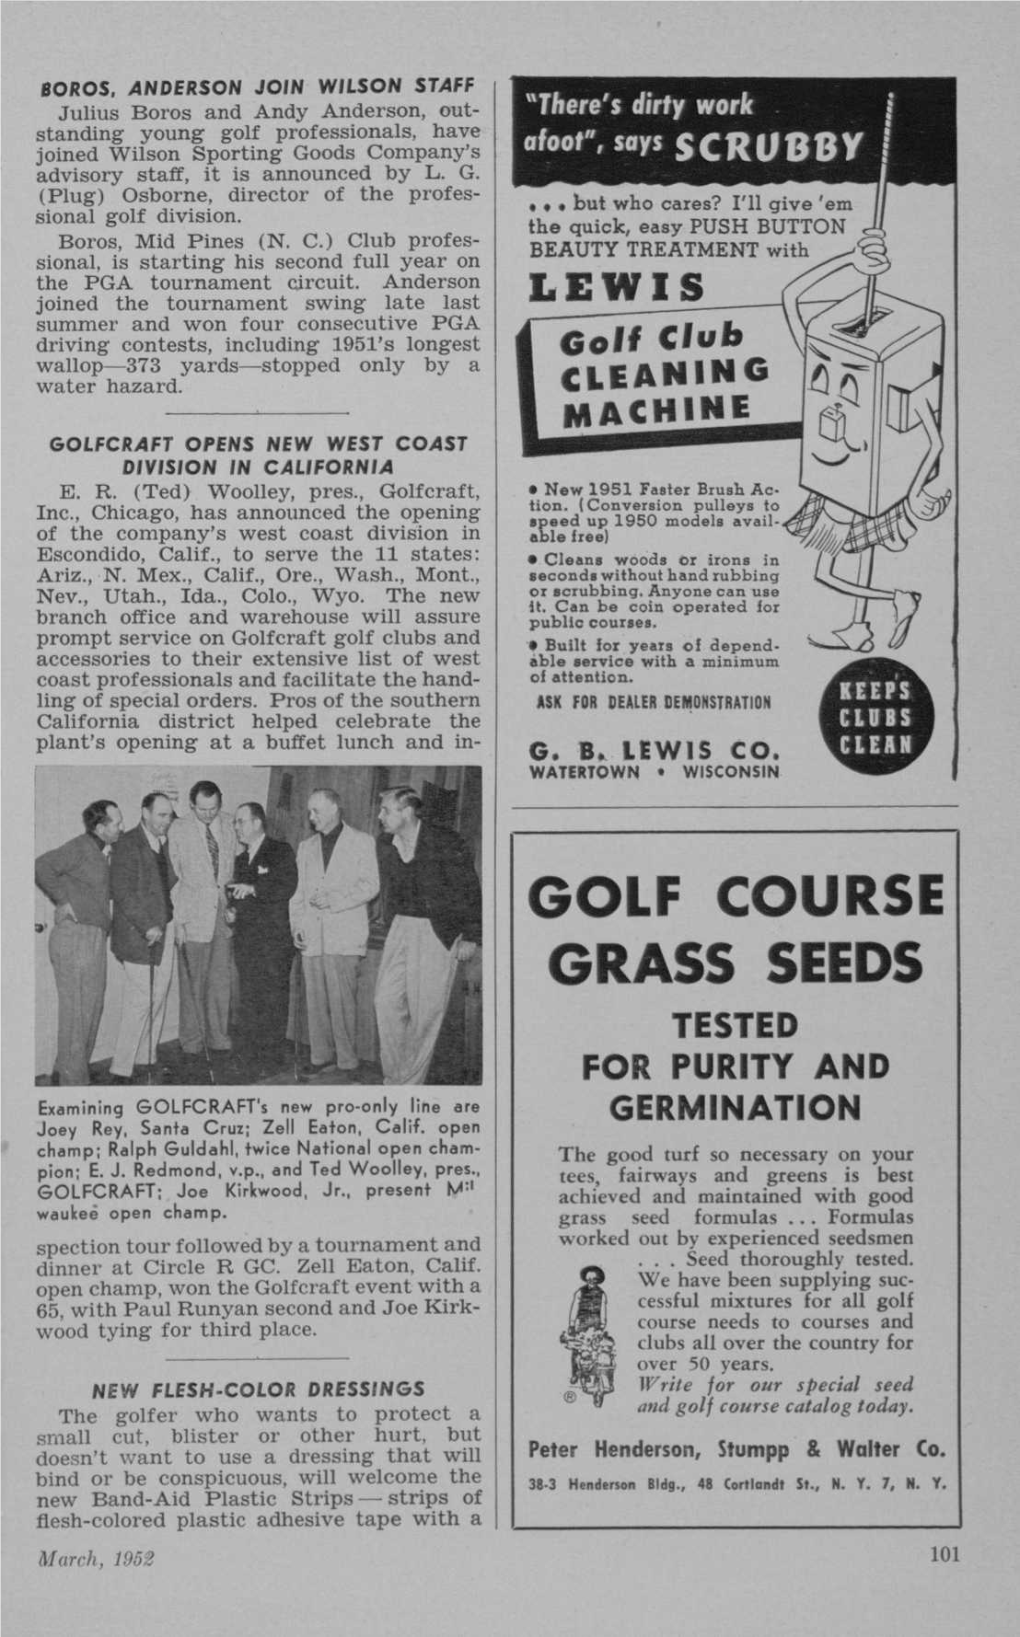 Golf Course Grass Seeds